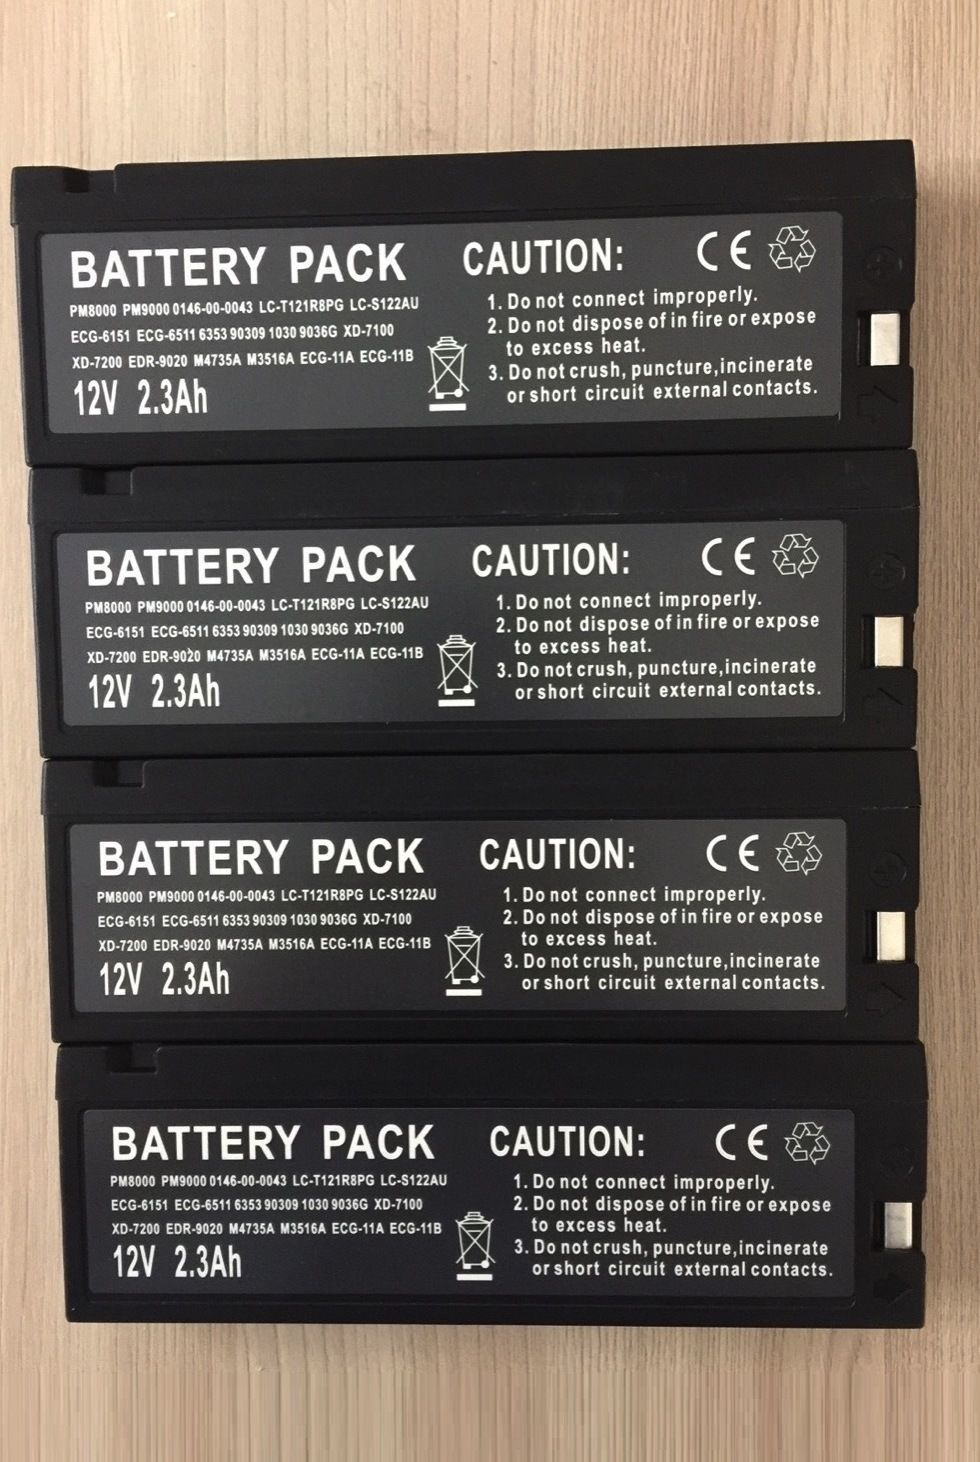 SLA Battery 12V 2.3Ah replacement for Bedside Monitor_แบตเตอรี่แห้งแบบวีดีโอ ขนาด 12 โวลต์ 2.3 แอมปฺ แบตเตอรี่สำหรับเครื่องมอนิเตอร์ผู้ป่วย